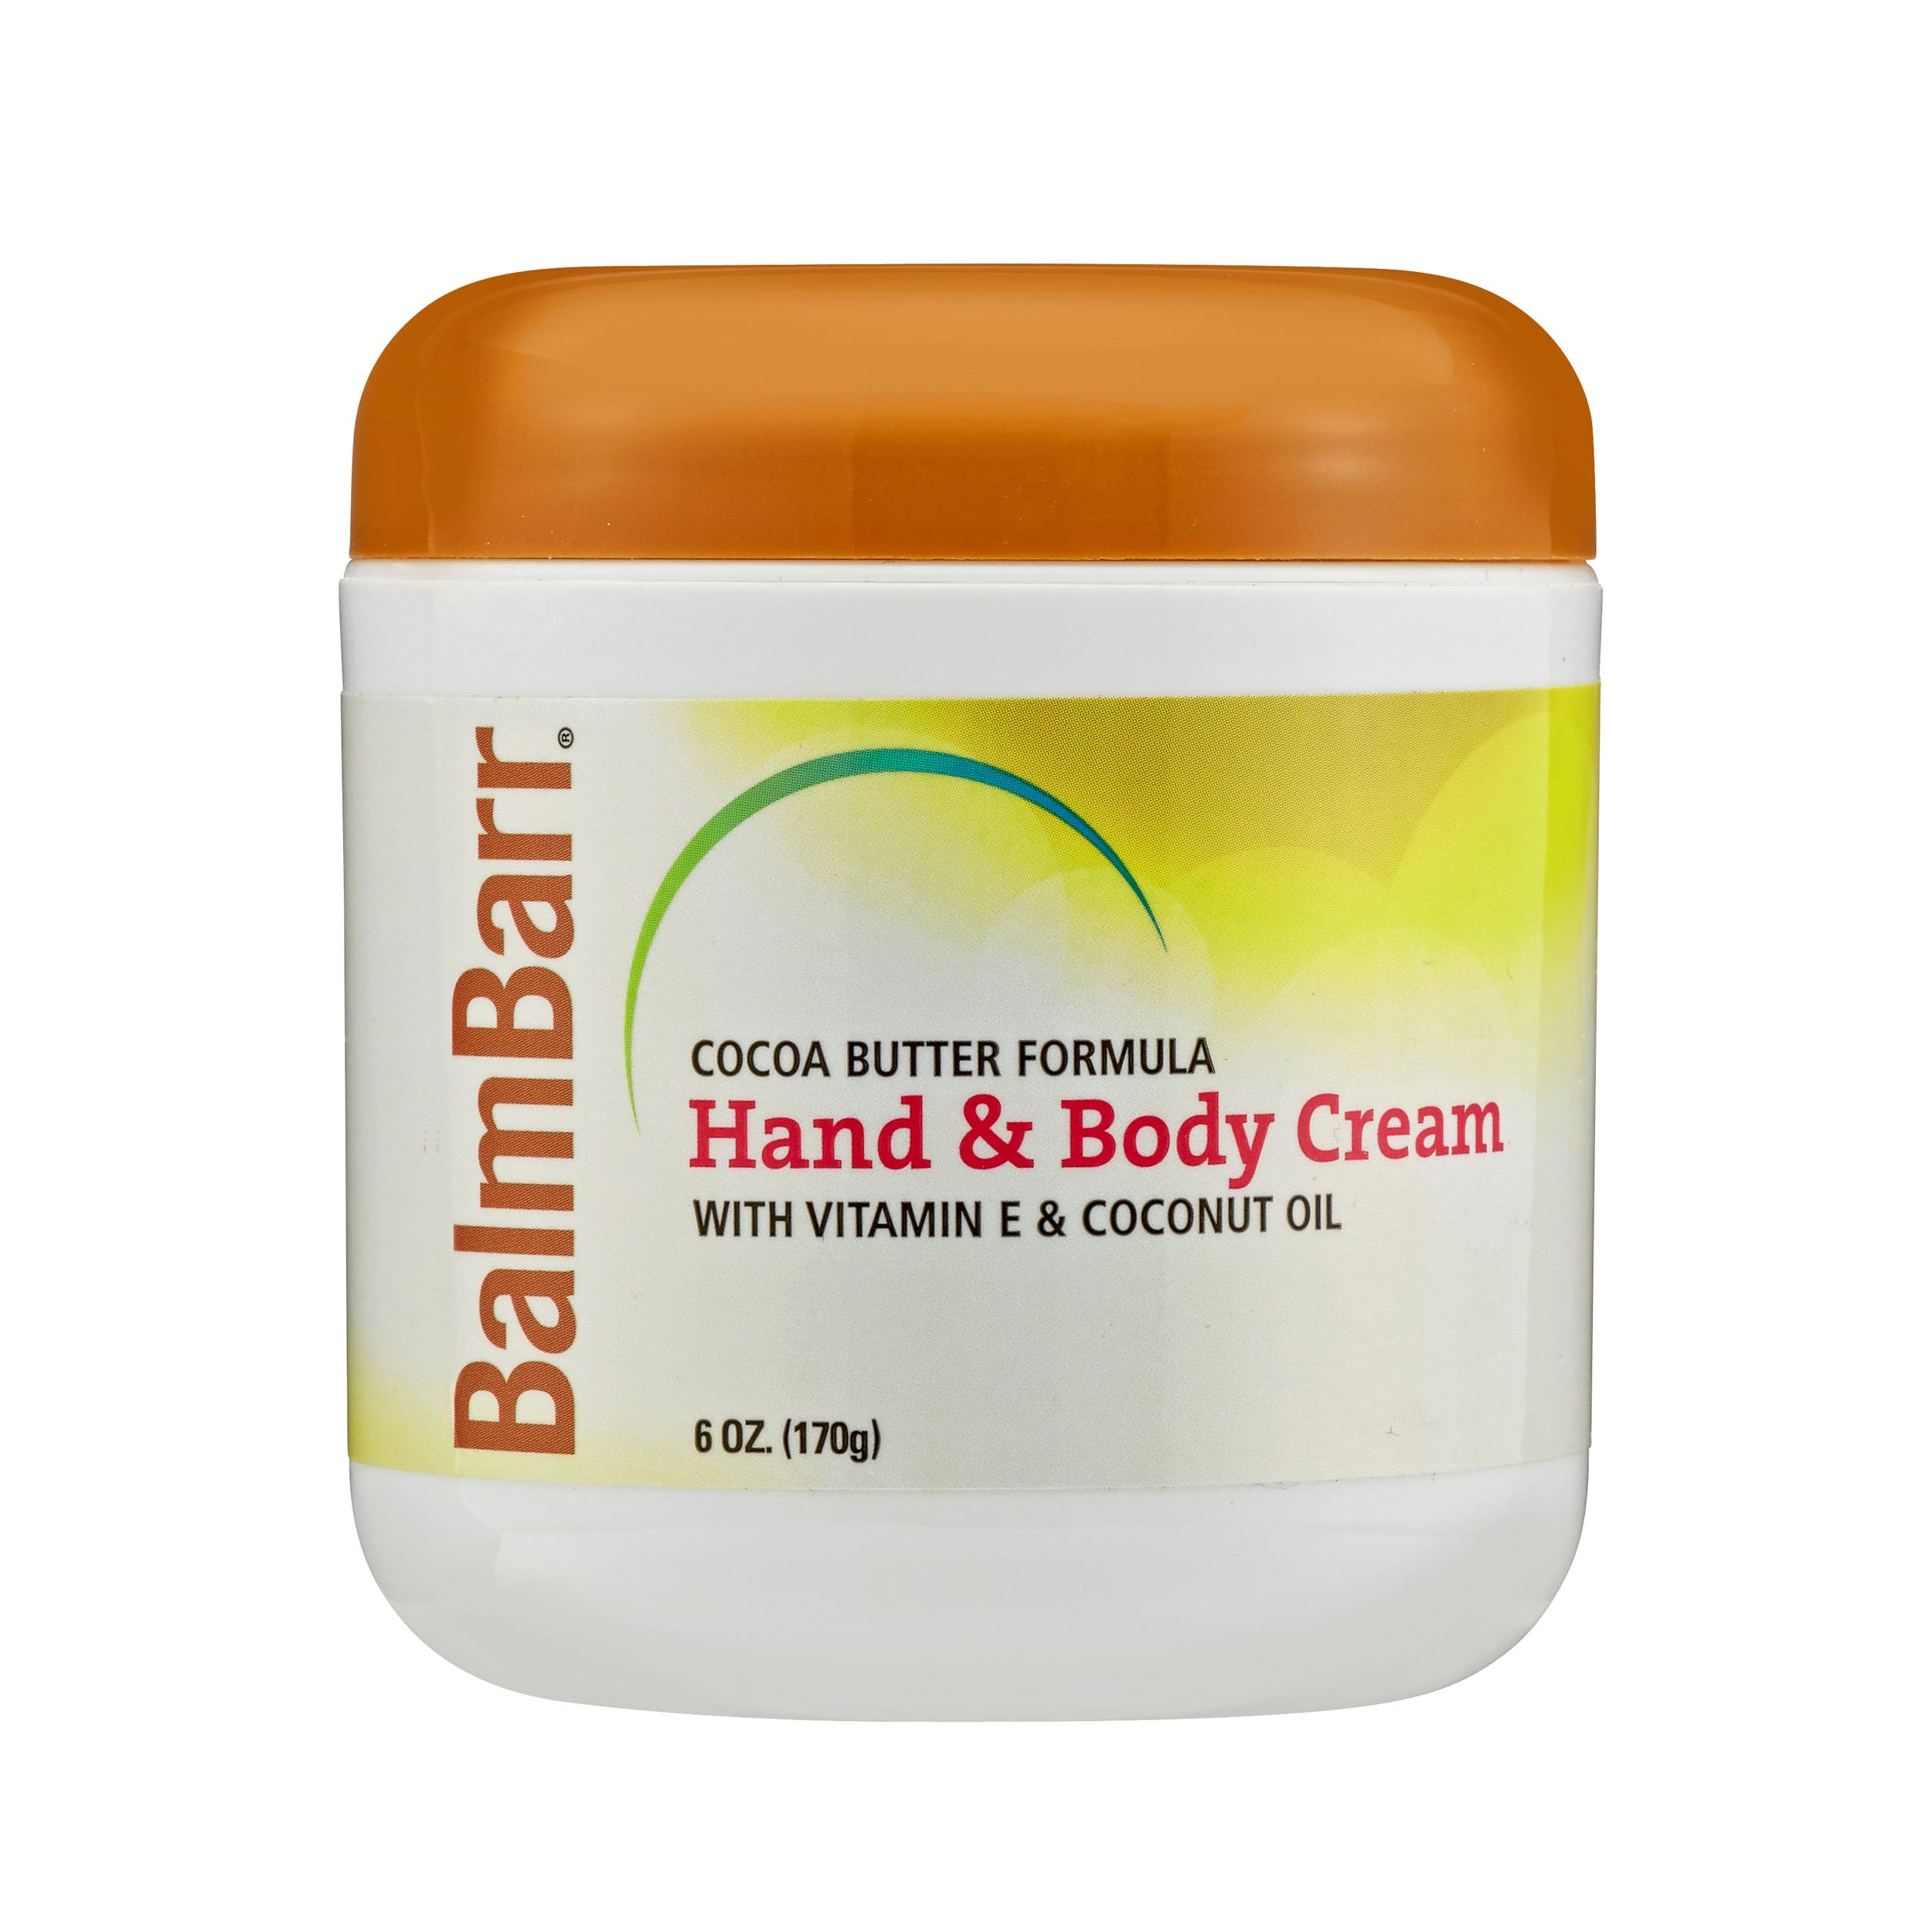 BalmBarr Hand & Body Cream